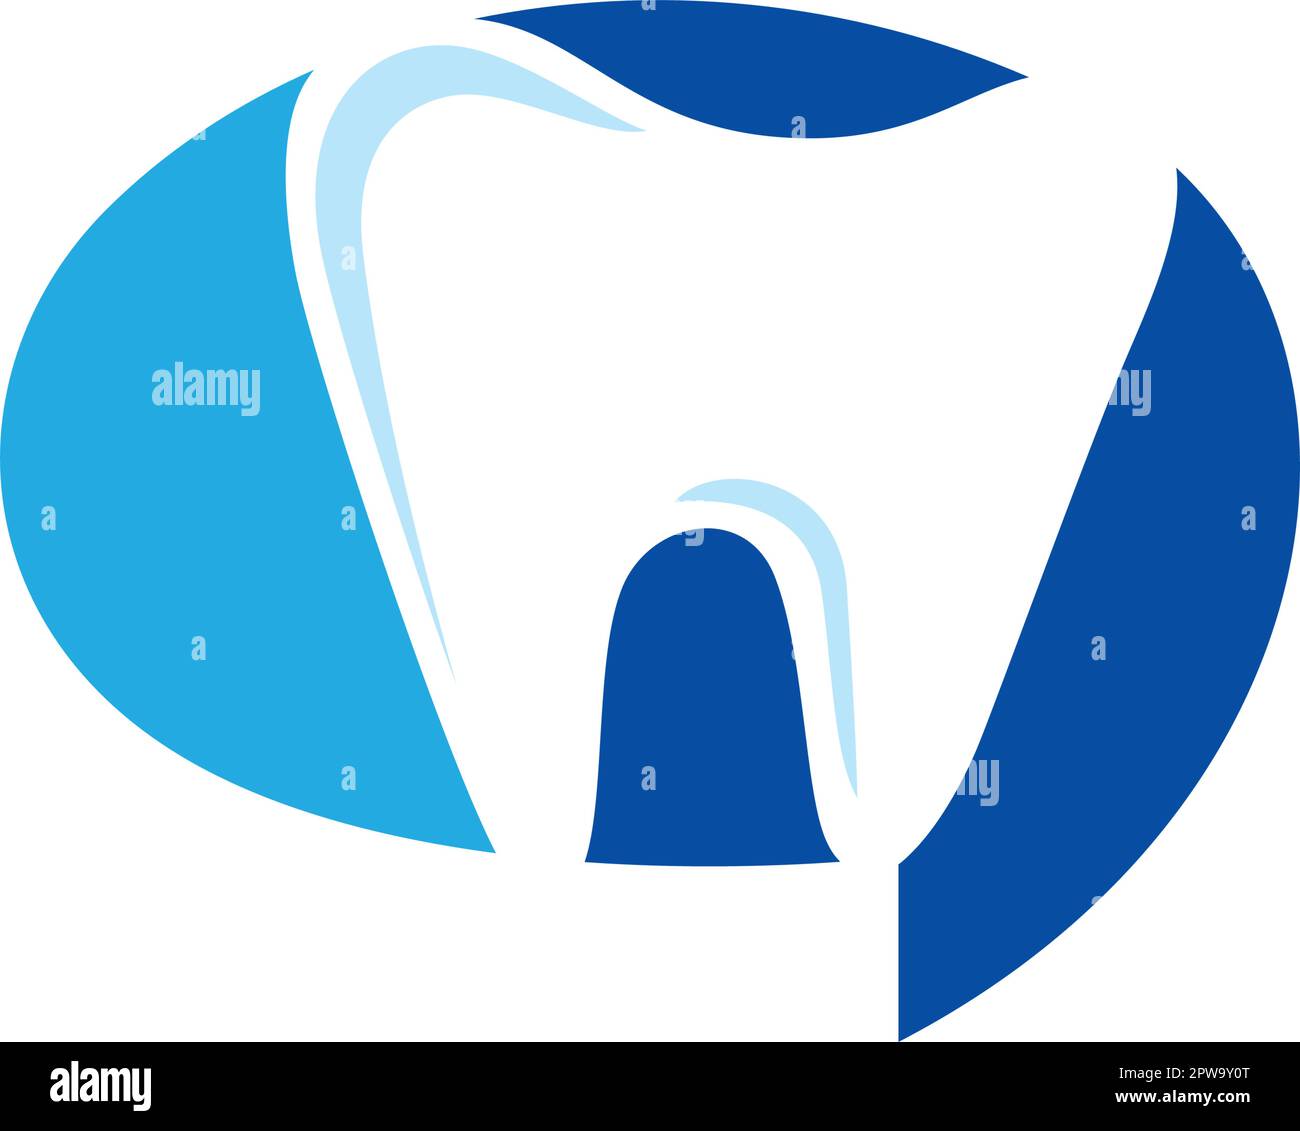 Symbole de chat dentaire ou de chat dentaire visualiséié avec dents et nuage de chat Illustration de Vecteur